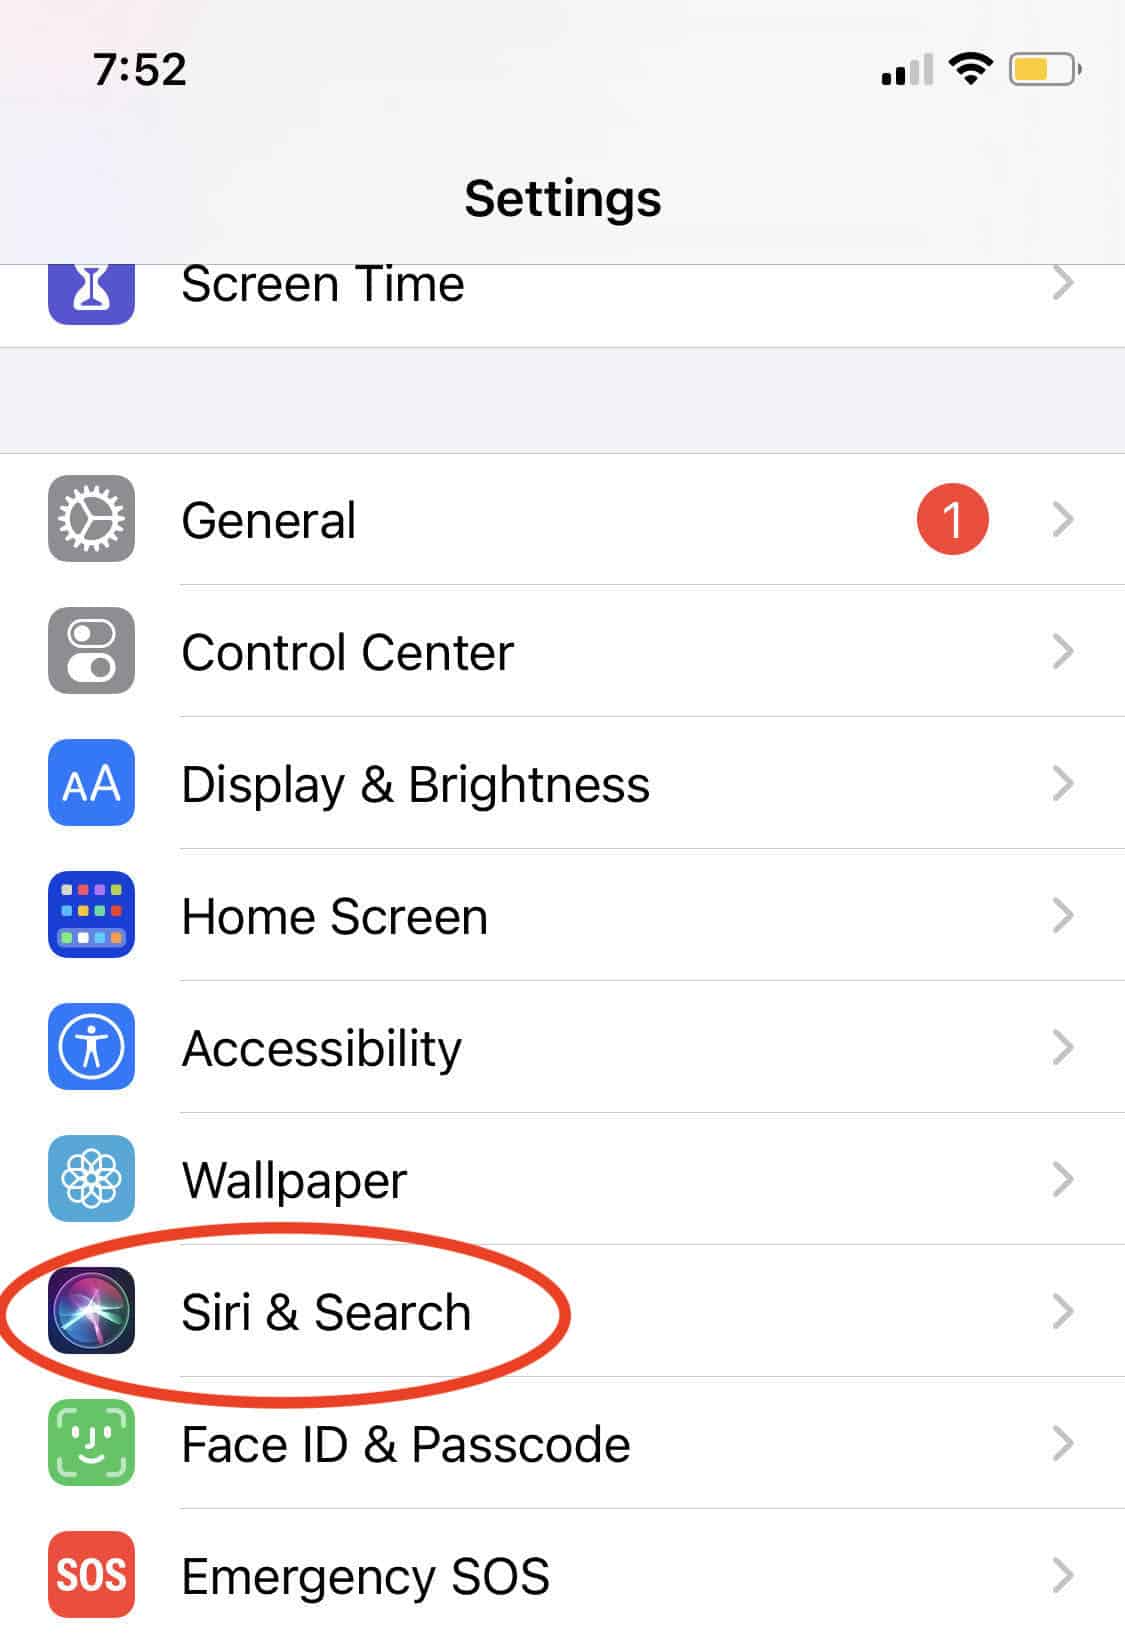 Select "Siri & Search"